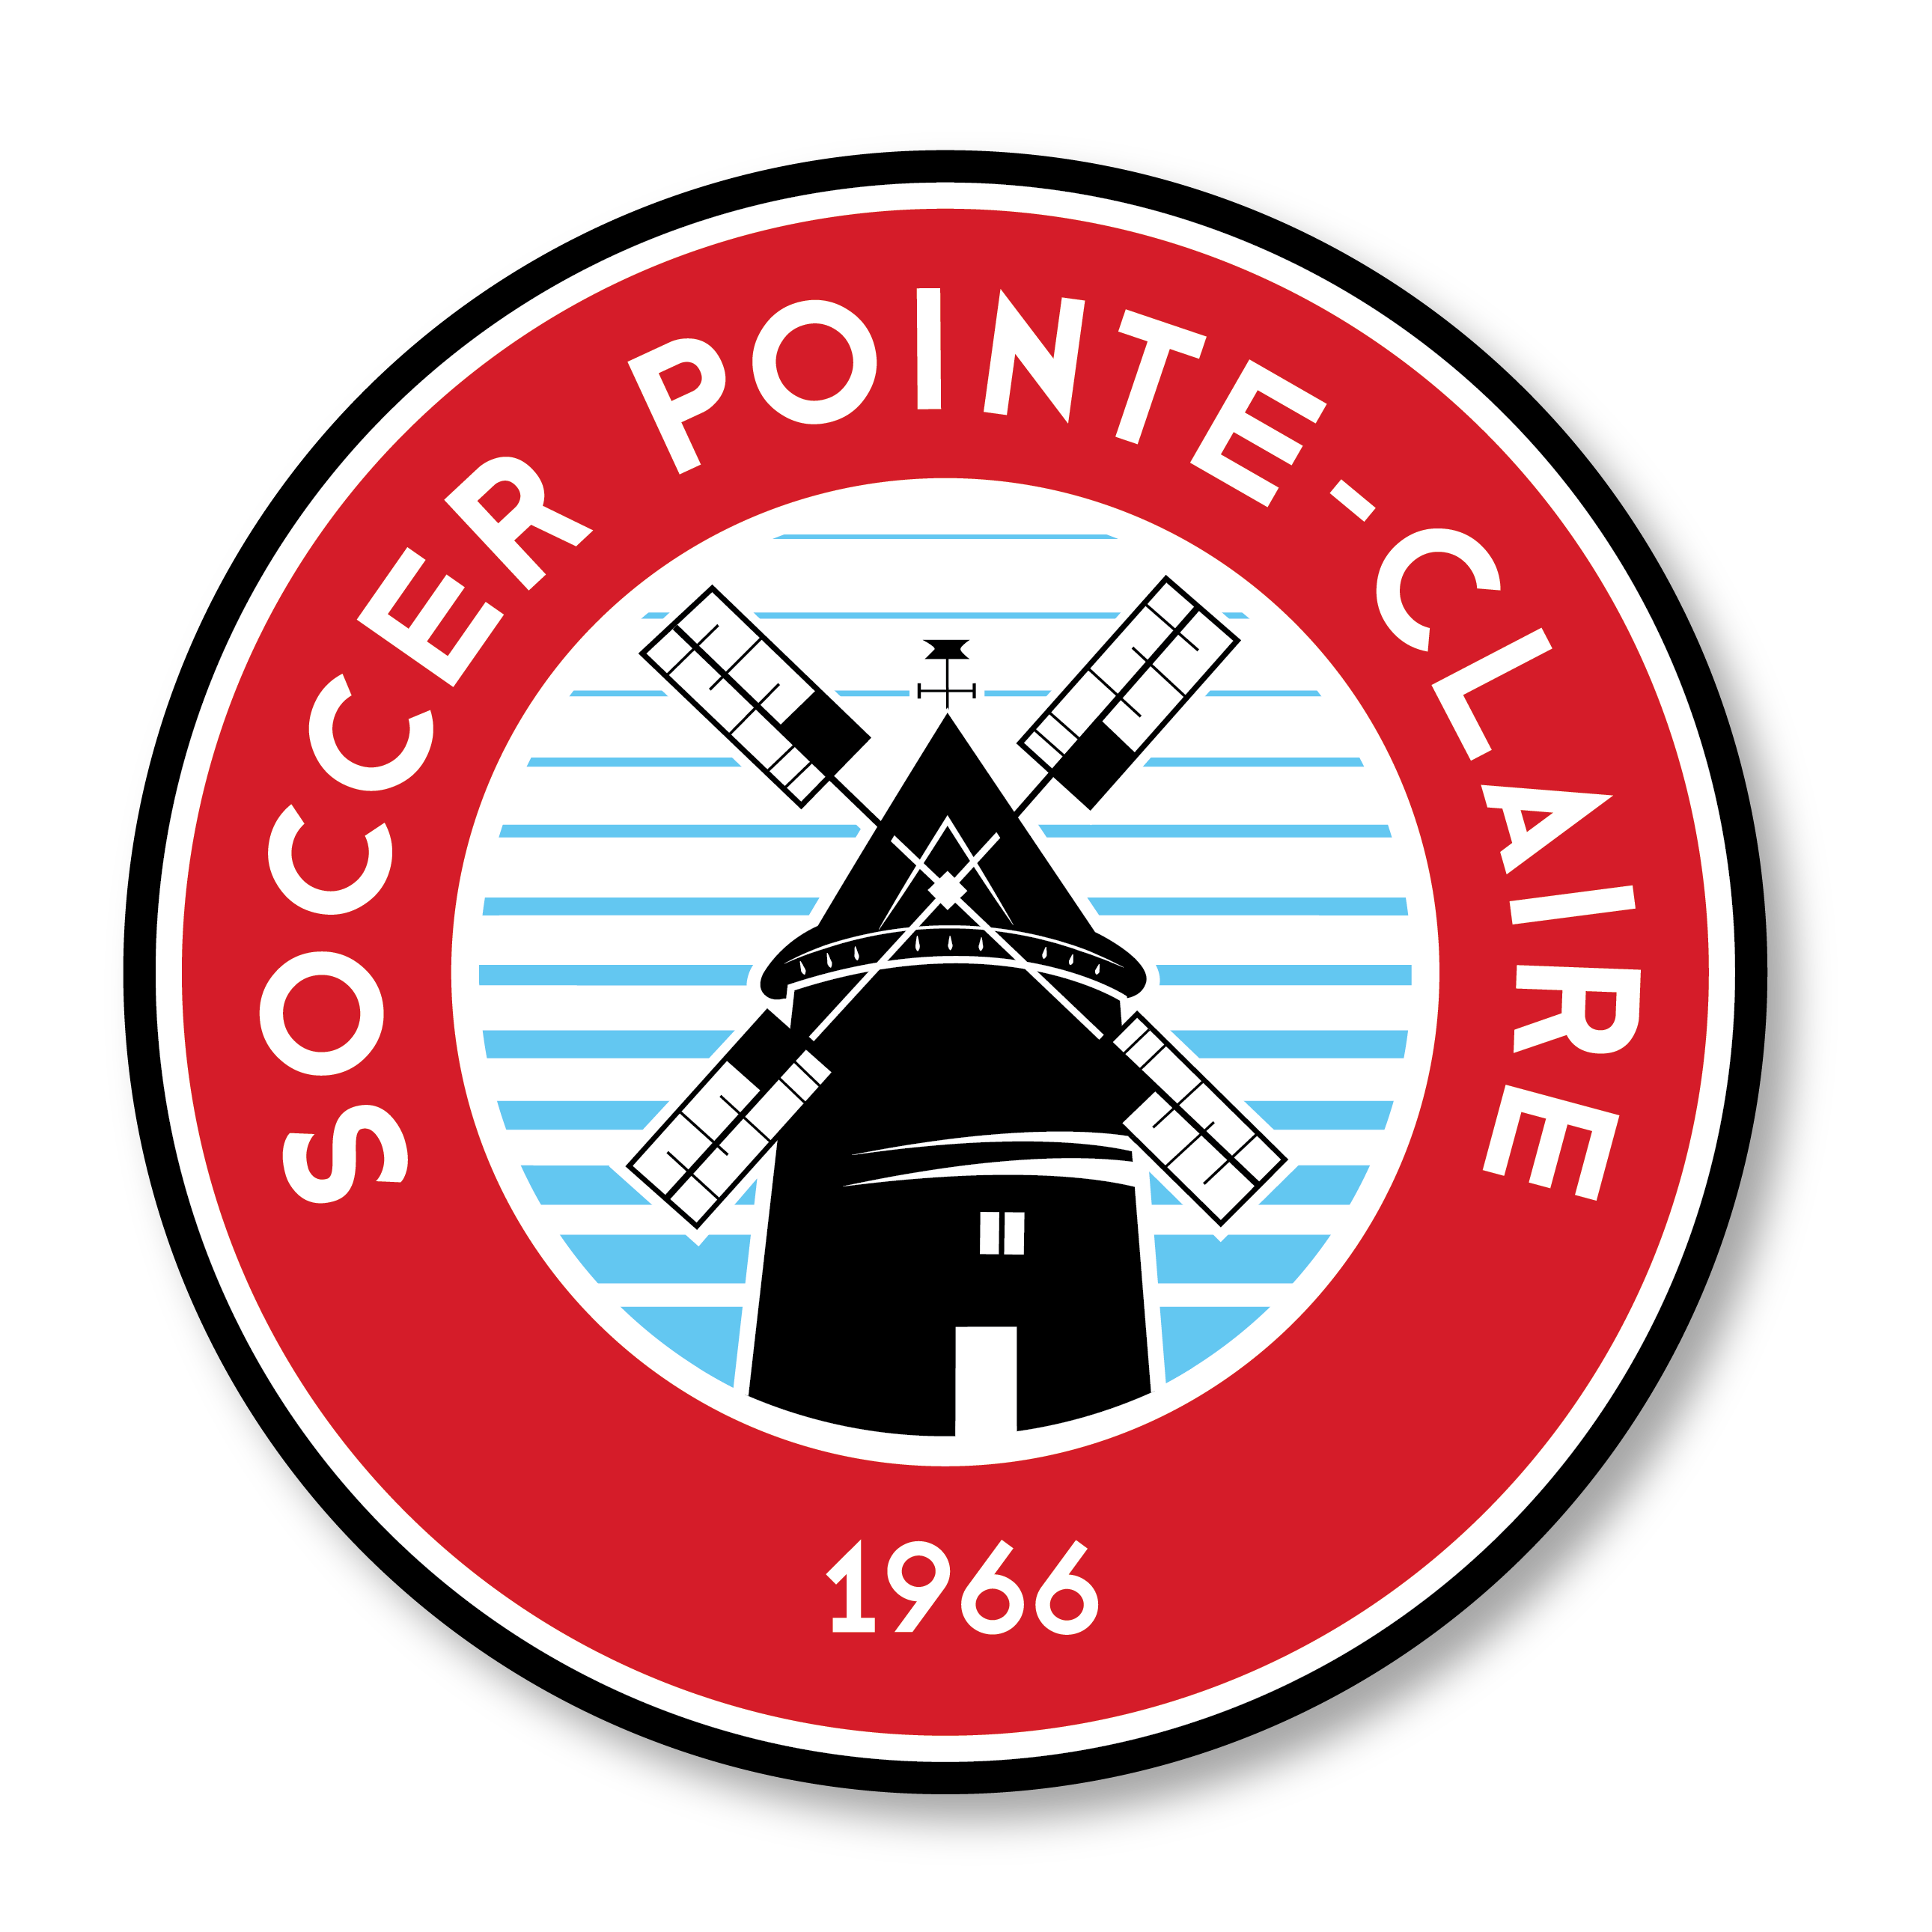 Association de soccer amateur de Pointe-Claire